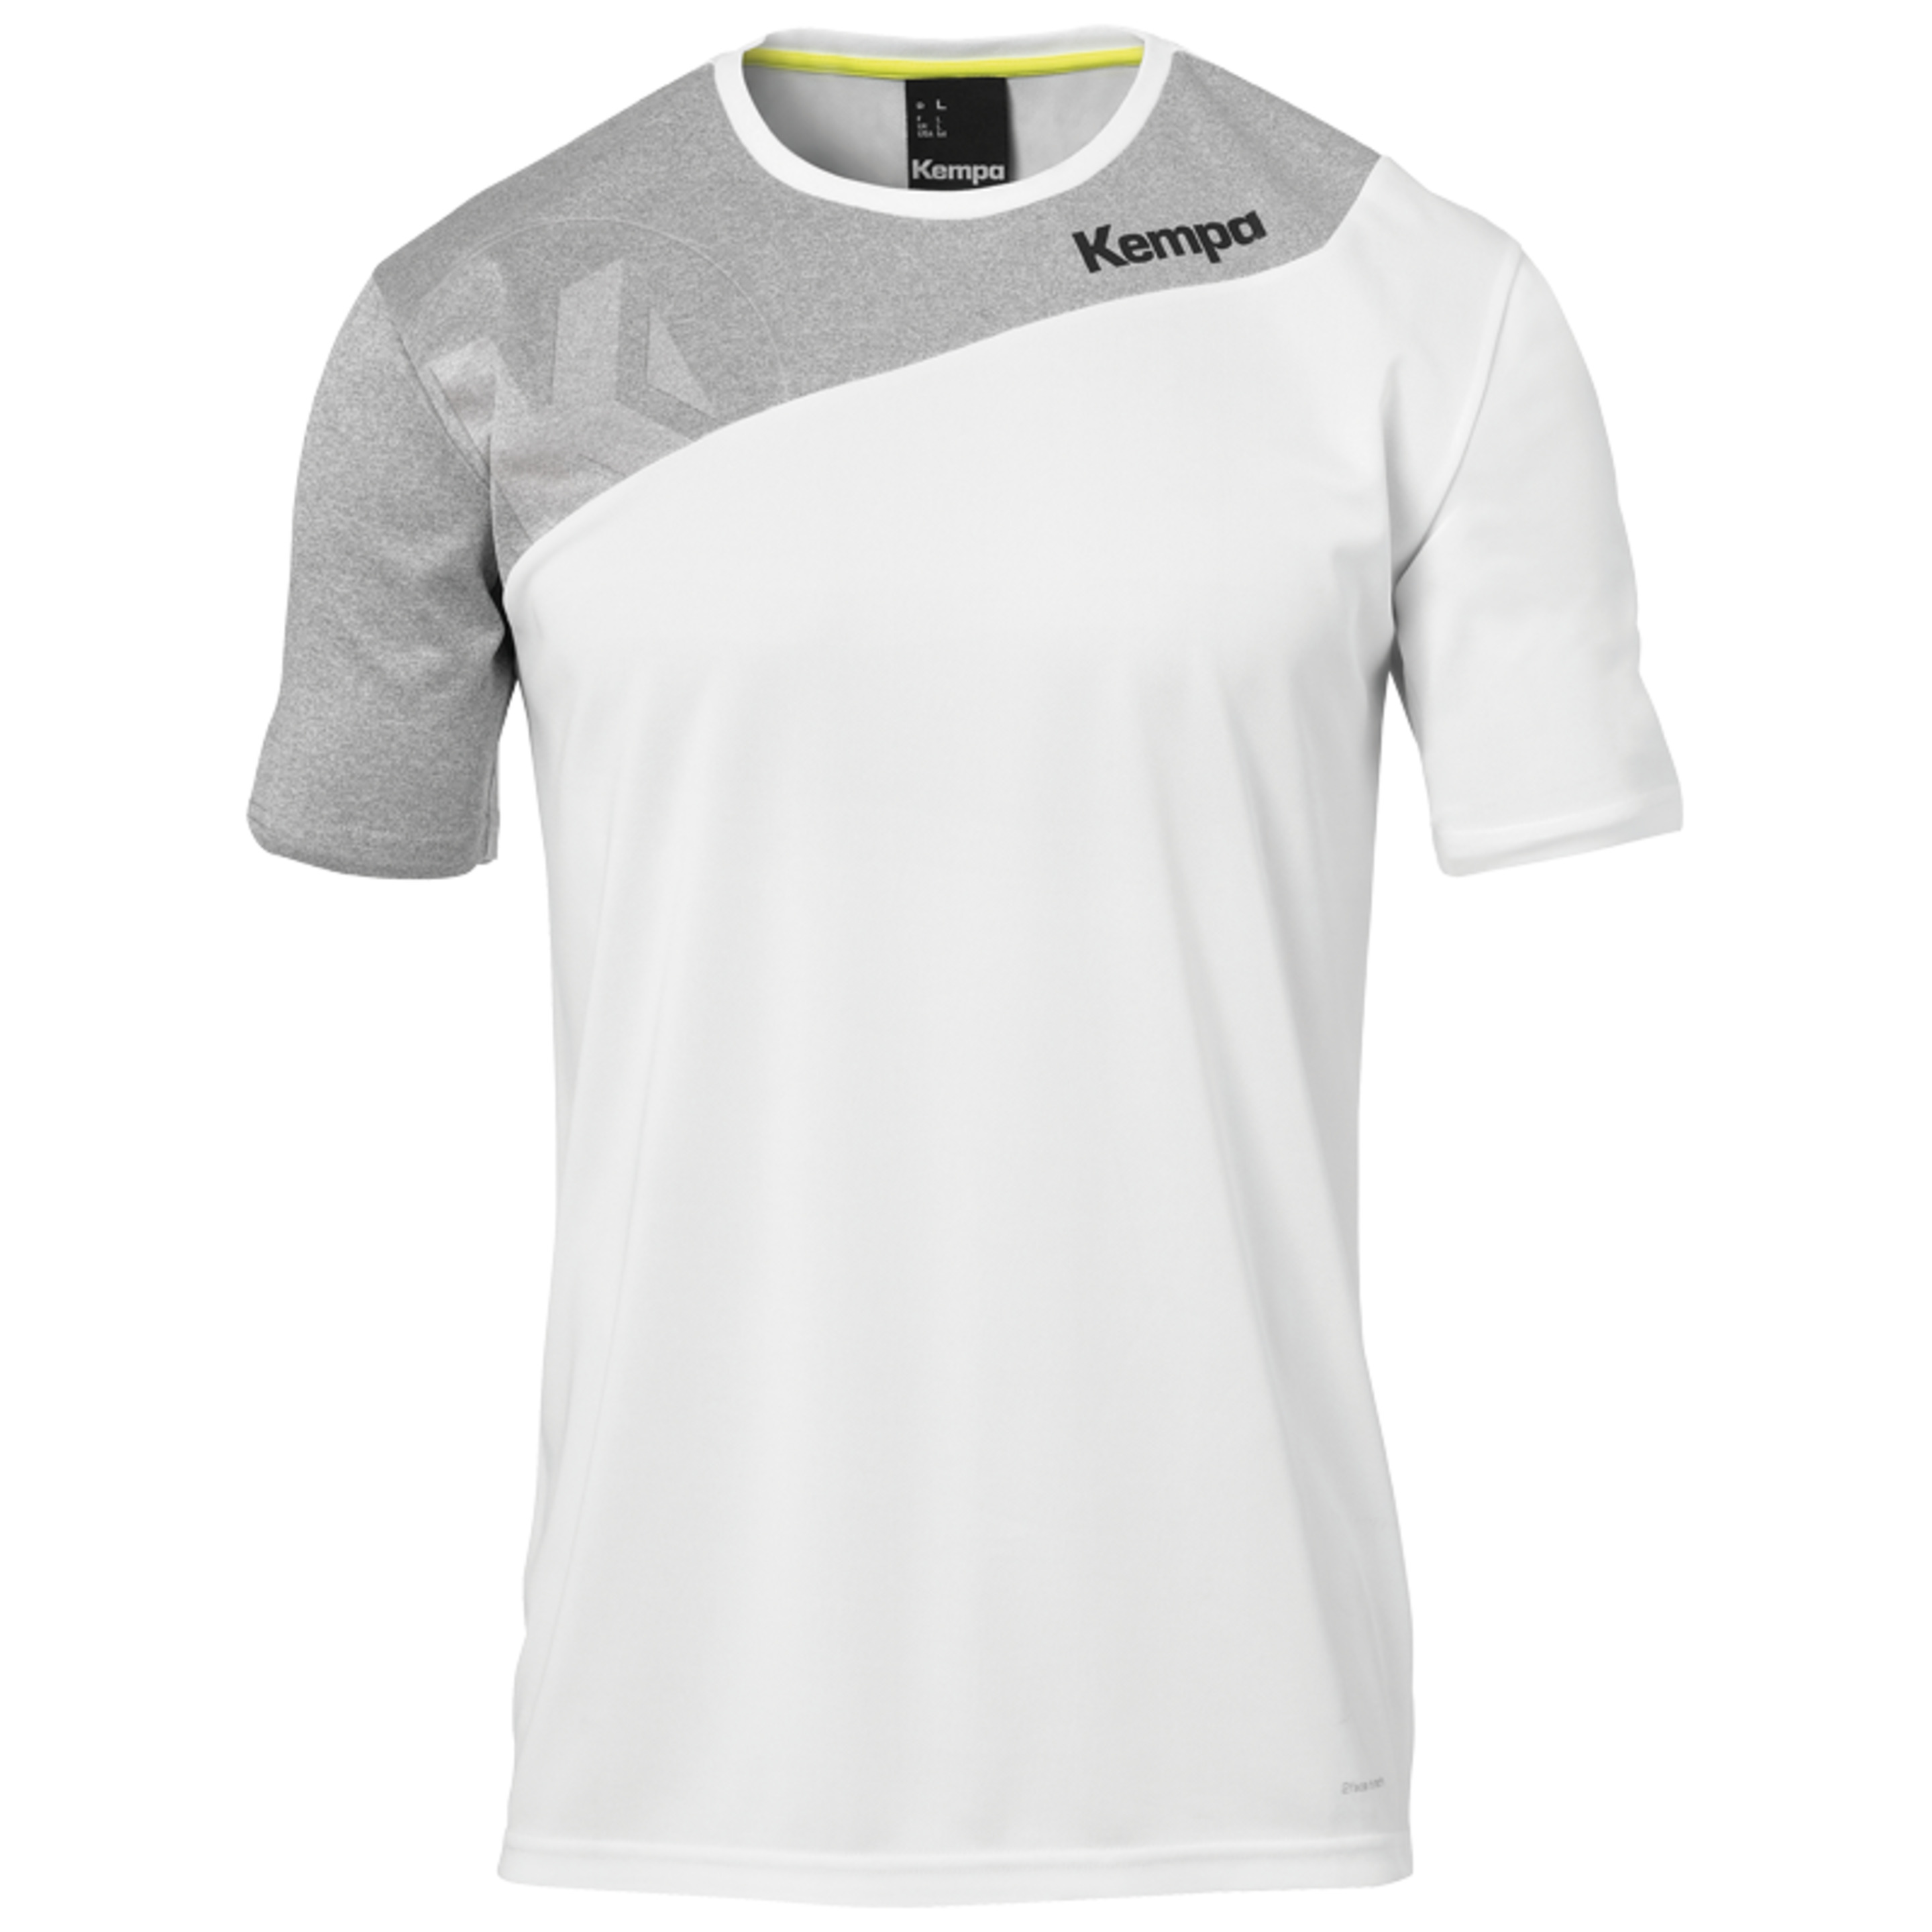 Core 2.0 Shirt Blanco/gris Oscuro Mezcla Kempa - blanco - 